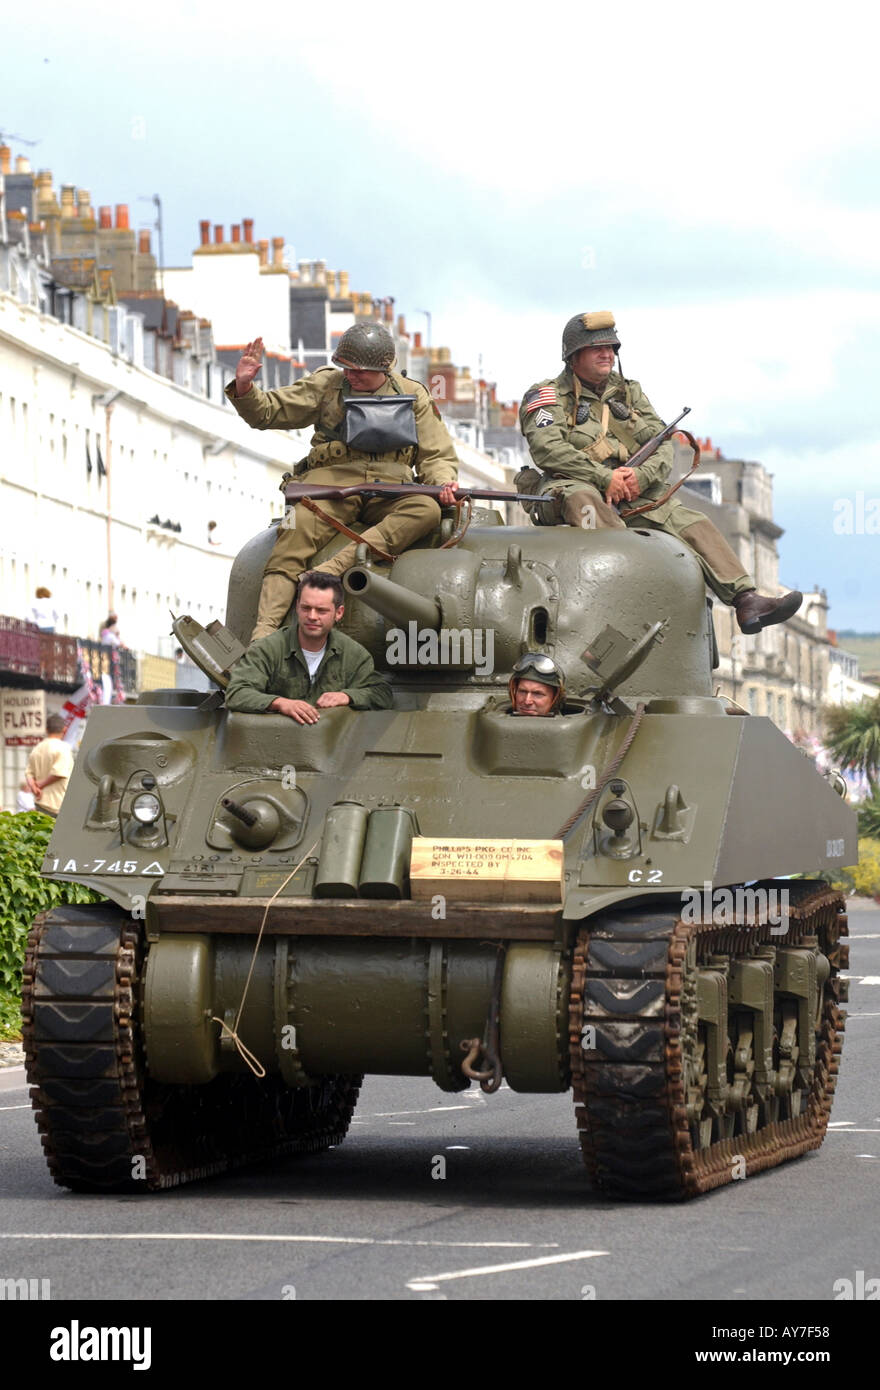 Ein Sherman-Panzer des 2. Weltkrieges mit Menschen in Zeit während einer Parade uniform gekleidet Stockfoto